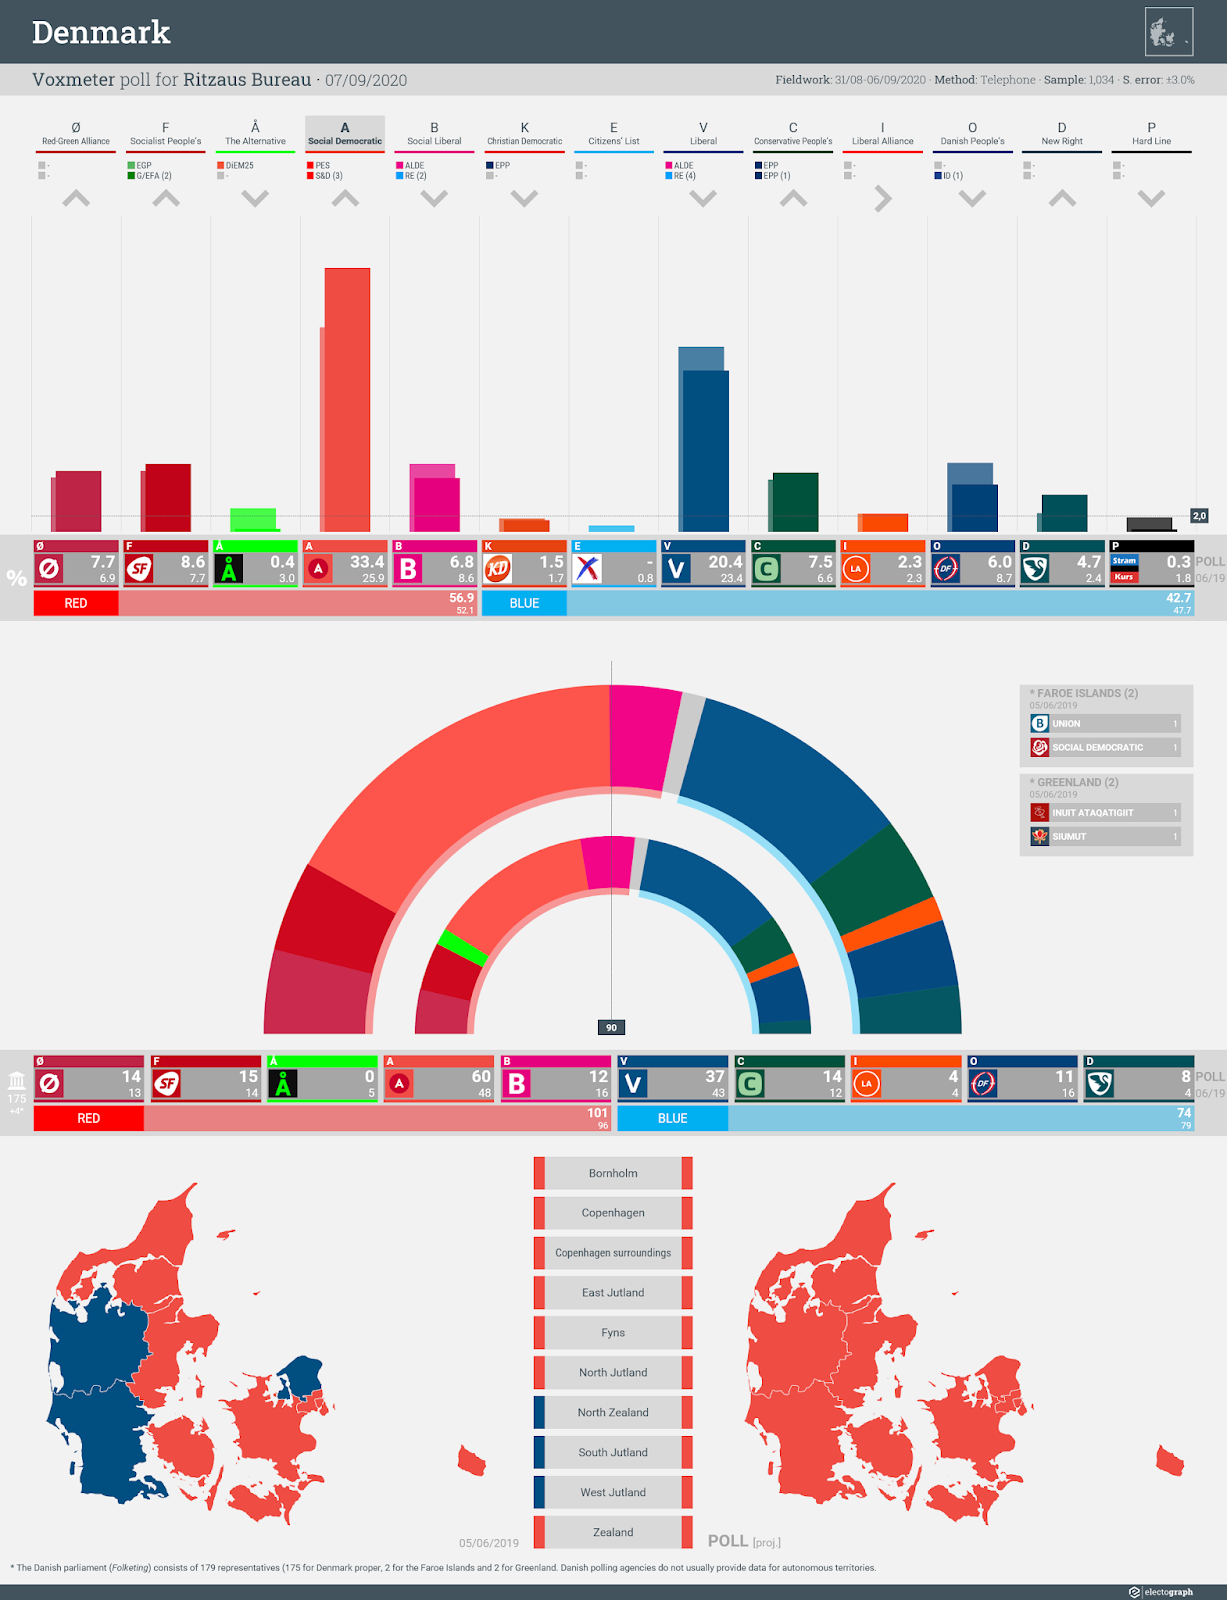 DENMARK: Voxmeter poll chart for Ritzaus Bureau, 7 September 2020